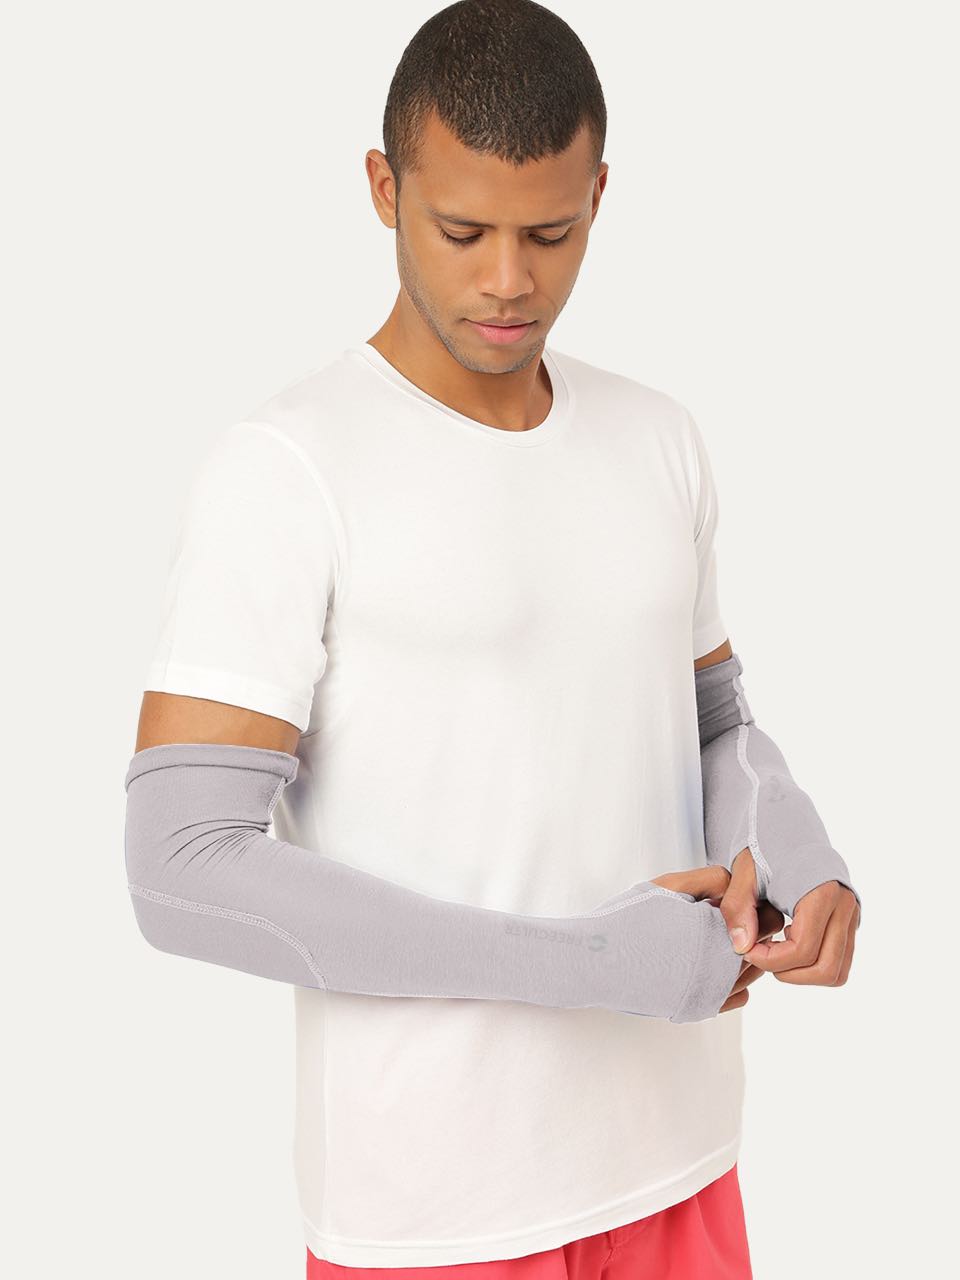 Unisex Arm Sleeves (Pack of 1)